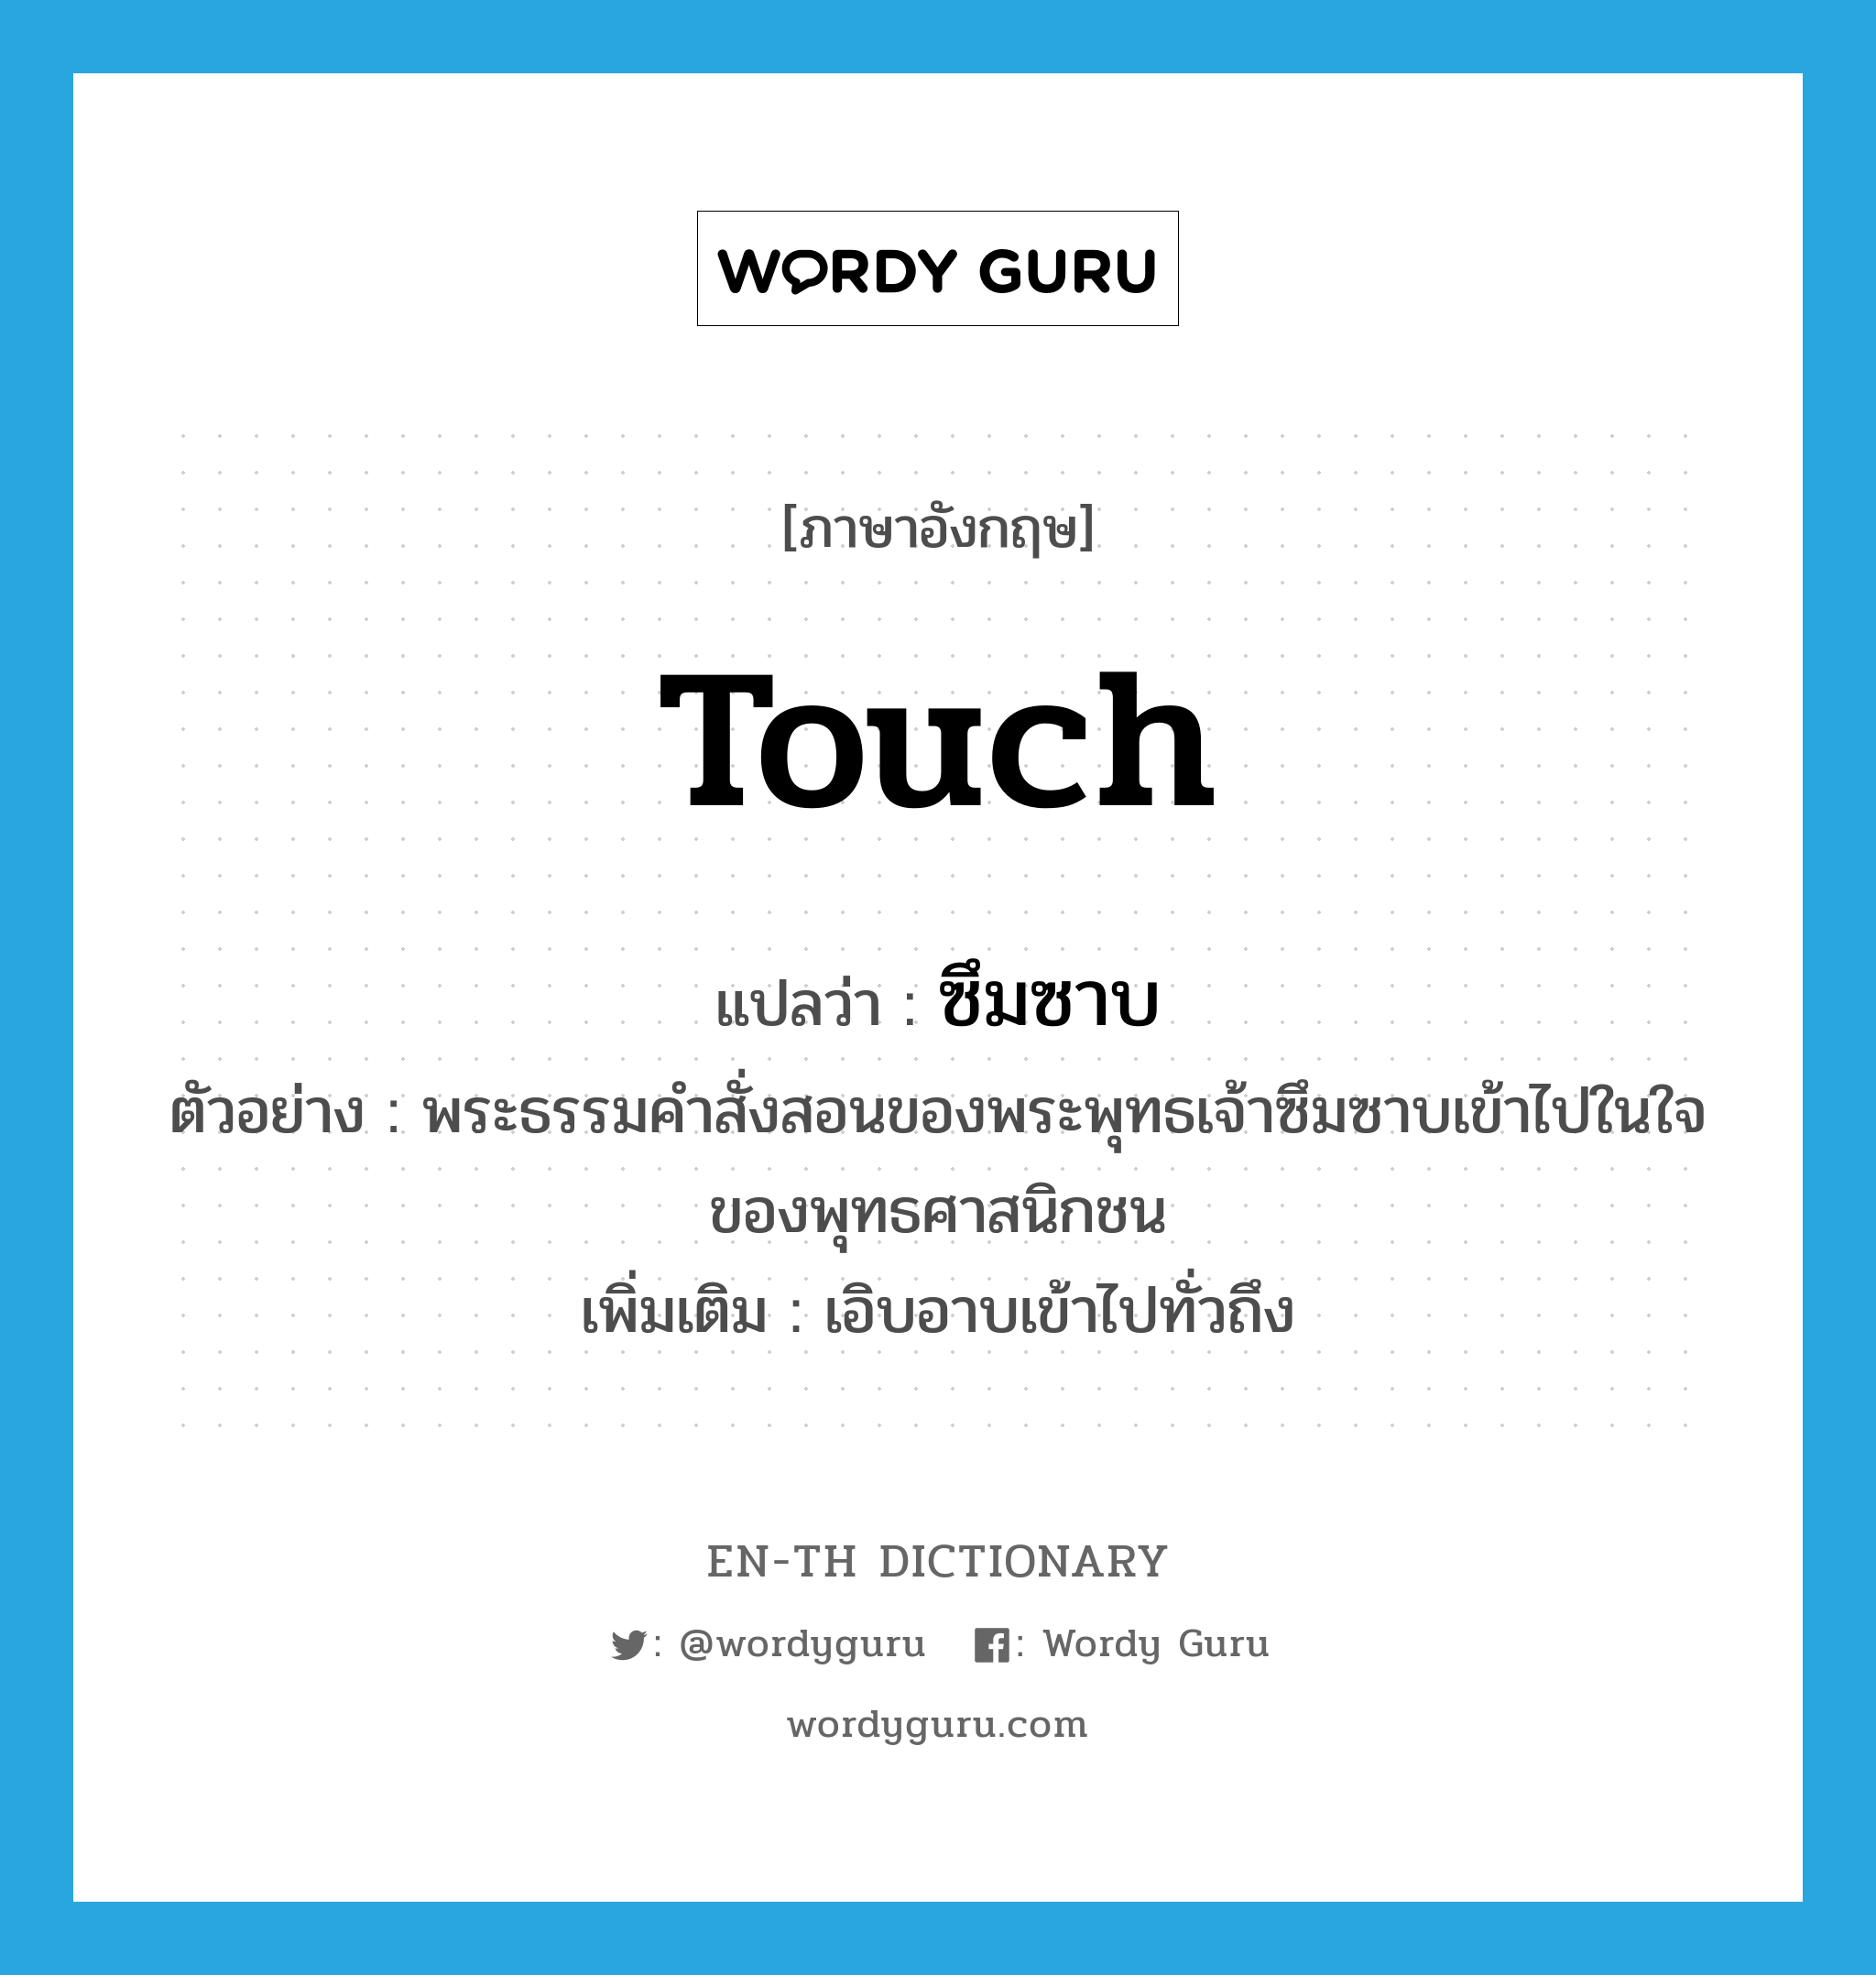 touch แปลว่า?, คำศัพท์ภาษาอังกฤษ touch แปลว่า ซึมซาบ ประเภท V ตัวอย่าง พระธรรมคำสั่งสอนของพระพุทธเจ้าซึมซาบเข้าไปในใจของพุทธศาสนิกชน เพิ่มเติม เอิบอาบเข้าไปทั่วถึง หมวด V